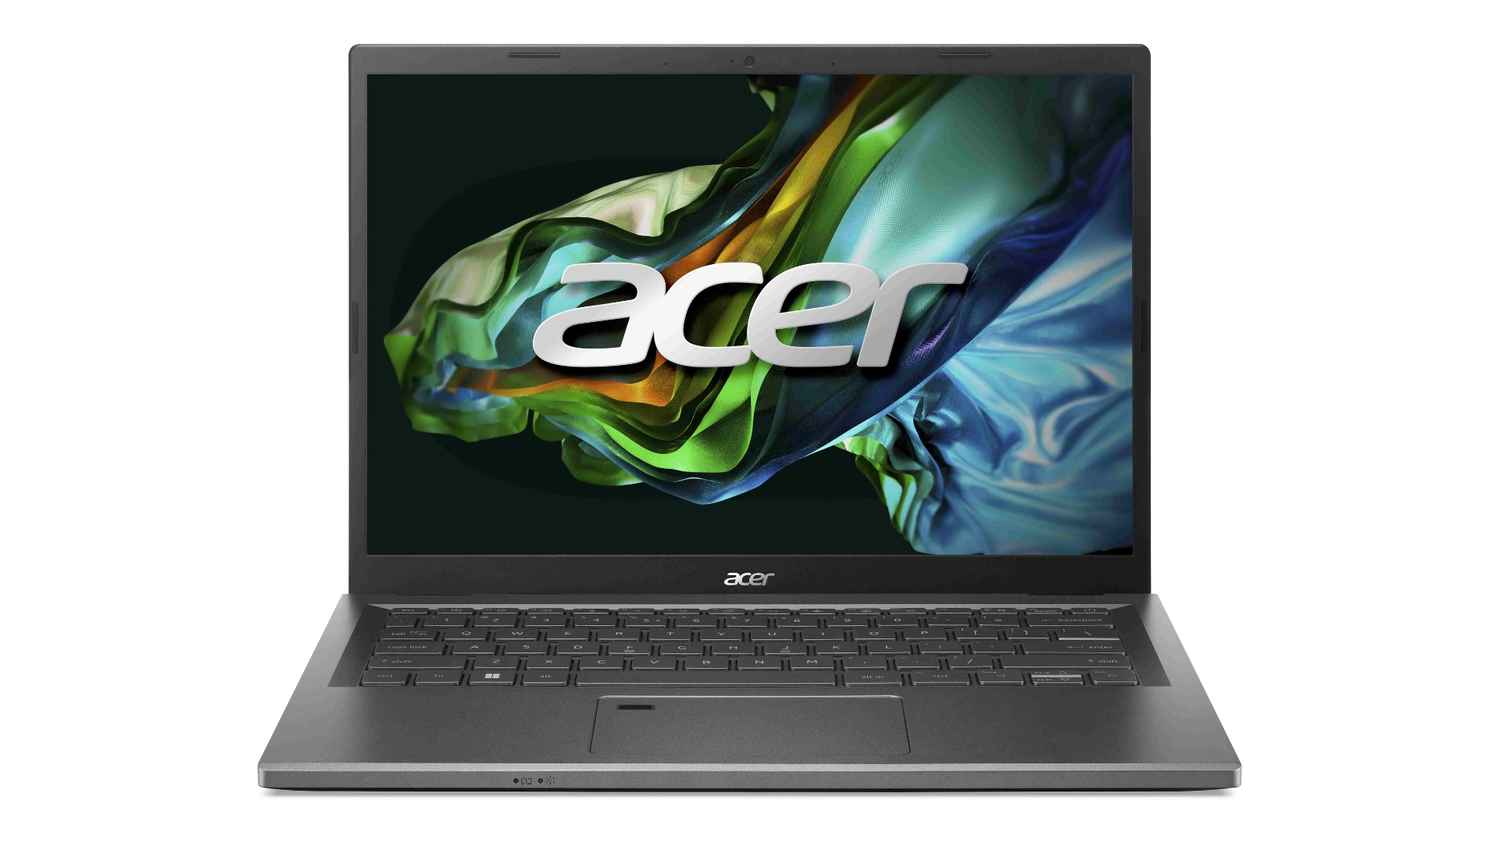 Acer Aspire 5 গেমিং ল্যাপটপ লঞ্চ হল, আছে Nvidia গ্রাফিক্স সহ কোন কোন ফিচার? দাম কত?